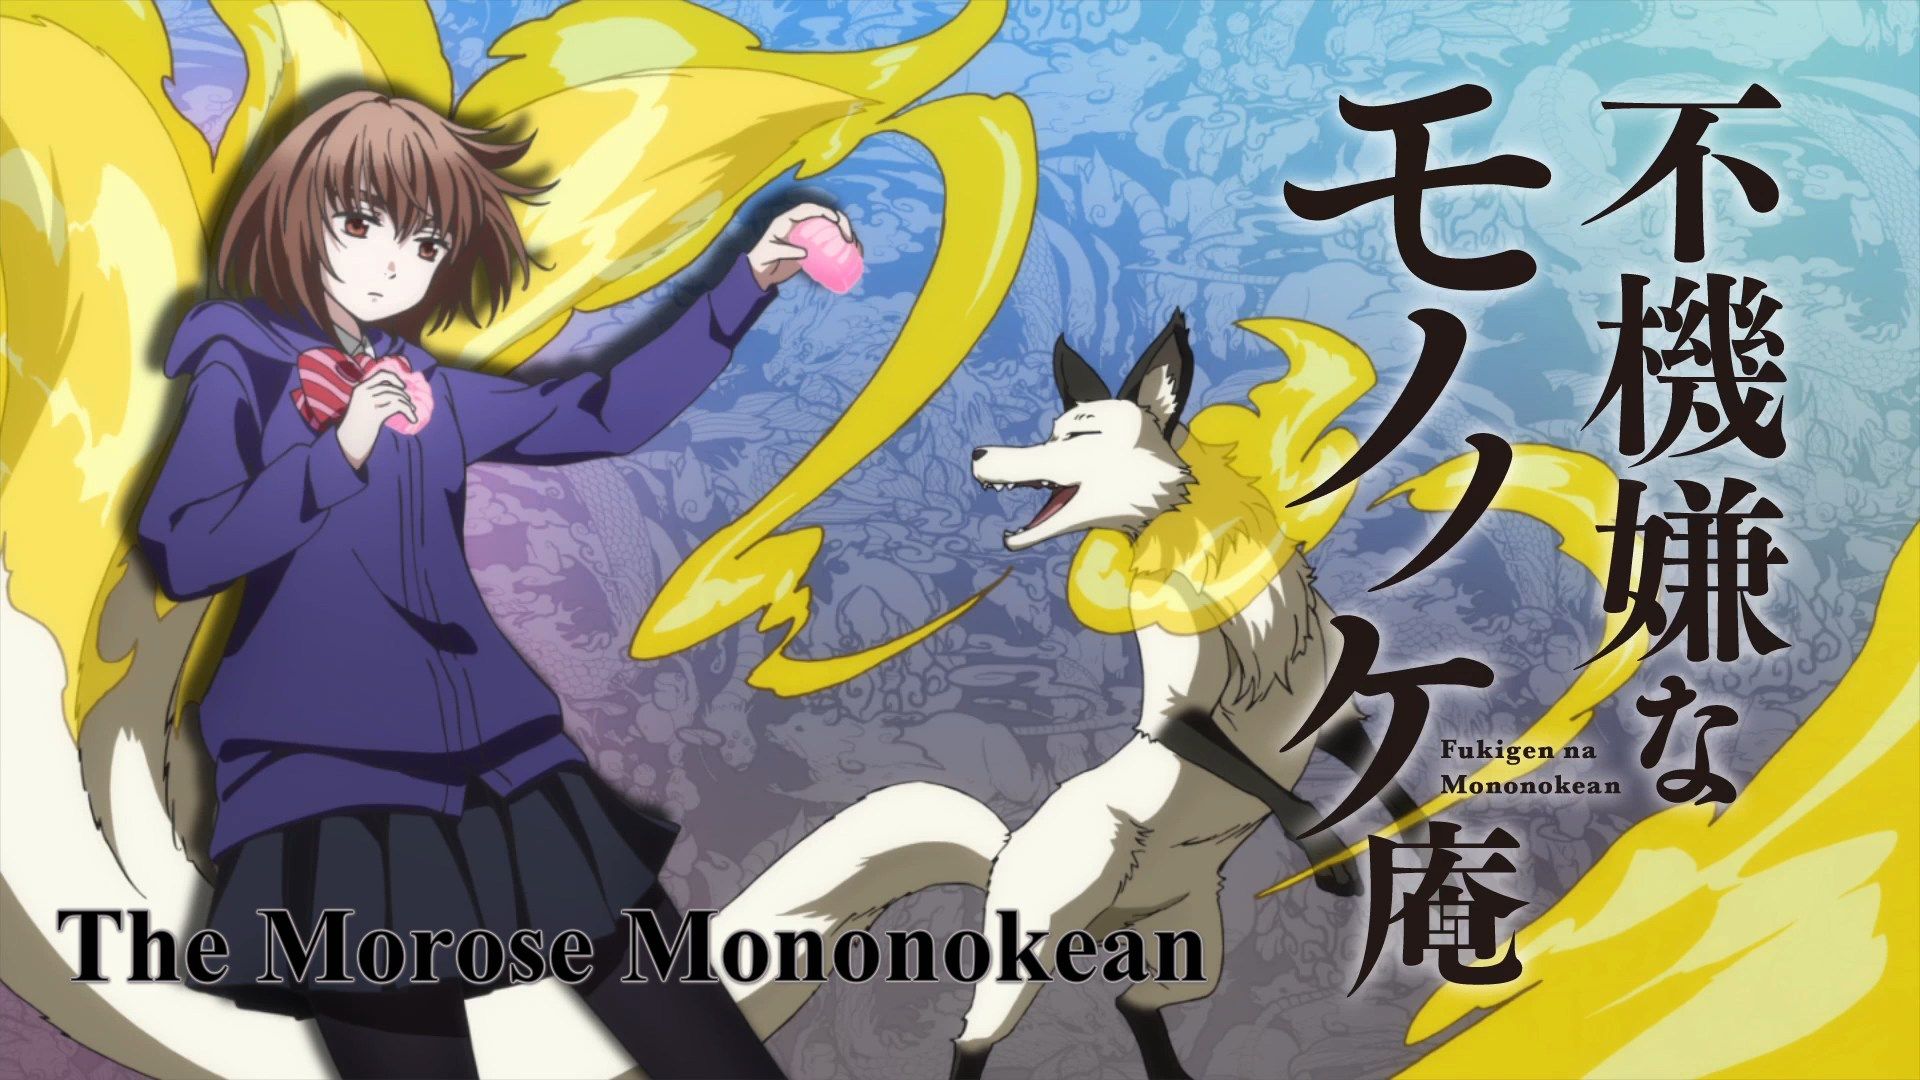 Fukigen na Mononokean (The Morose Mononokean) Season 1+2 (English Audio) DVD